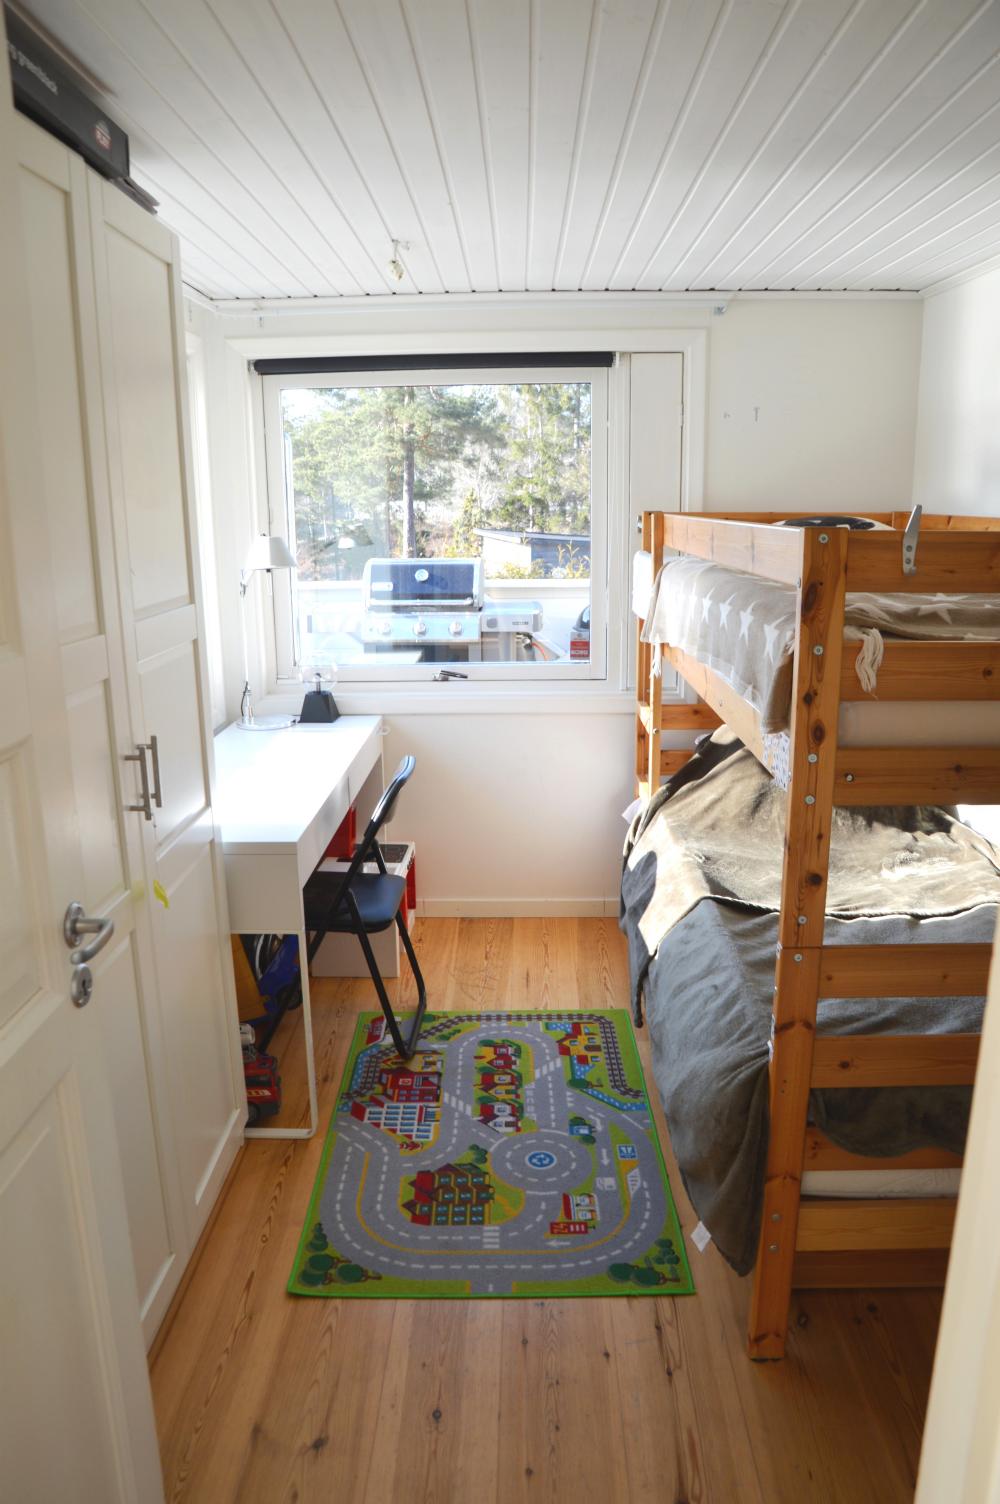 Sovrum 2 med våningssäng/ Bedroom 2 with a bunk bed 